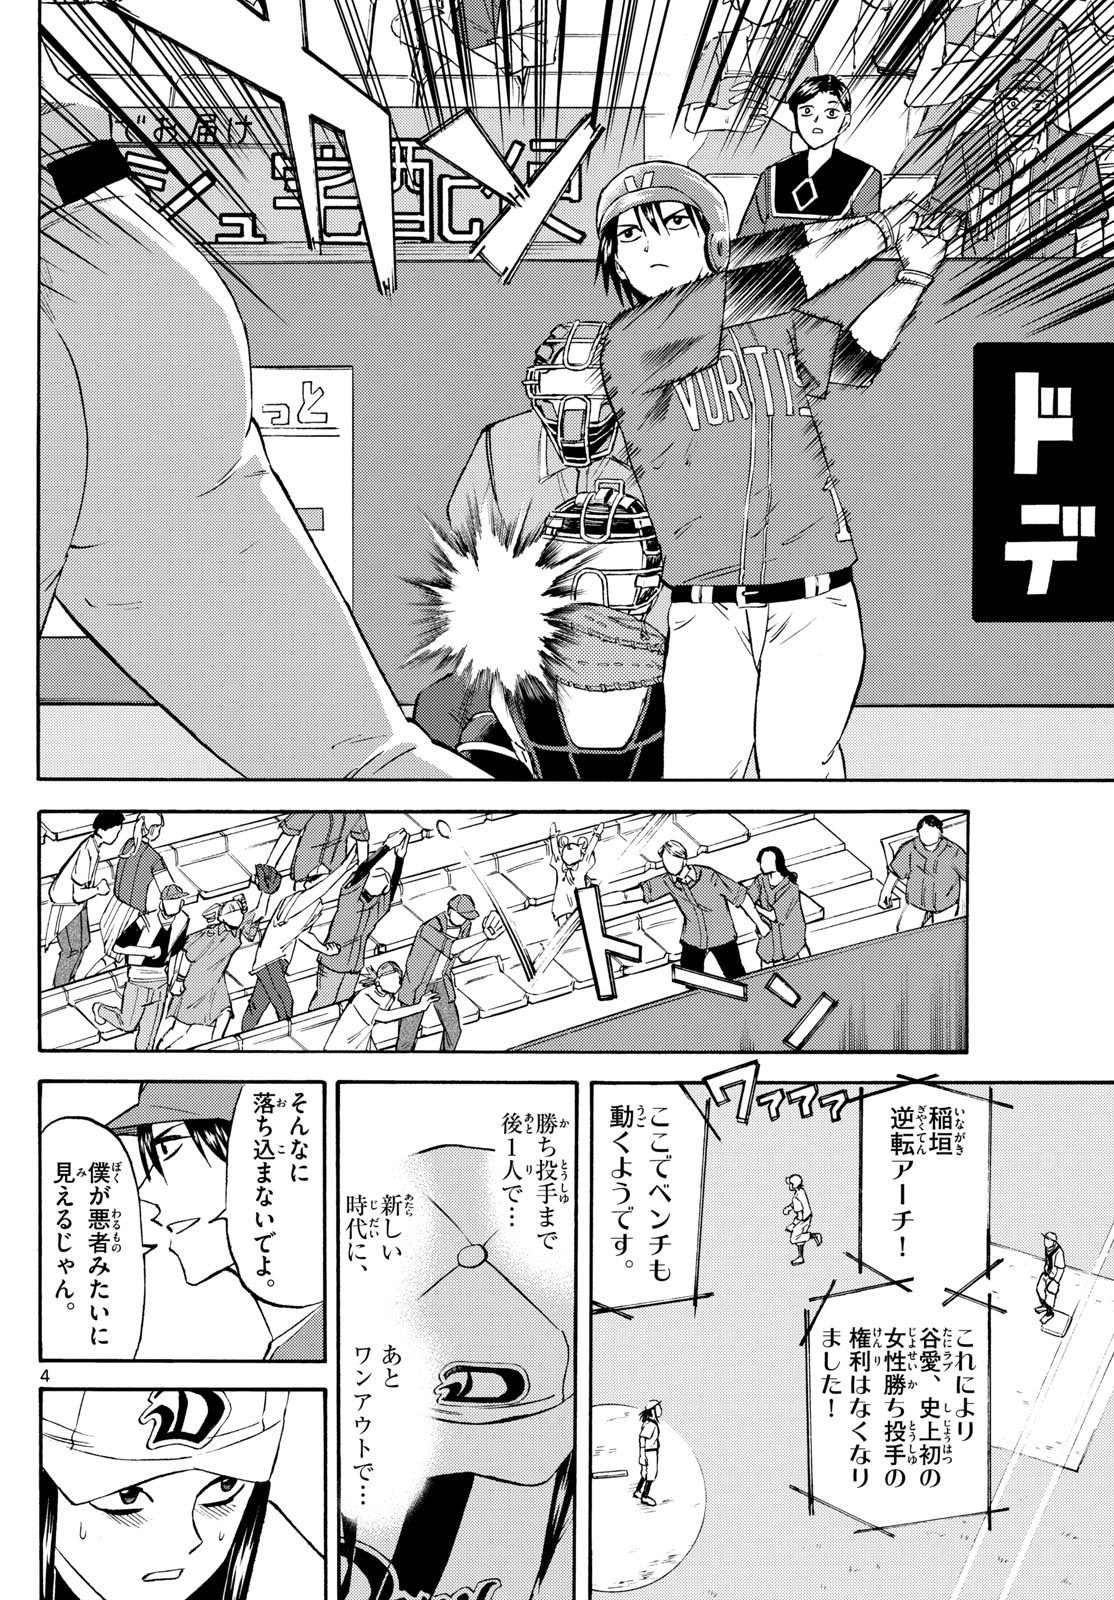 Tatsu to Ichigo - Chapter 197 - Page 4